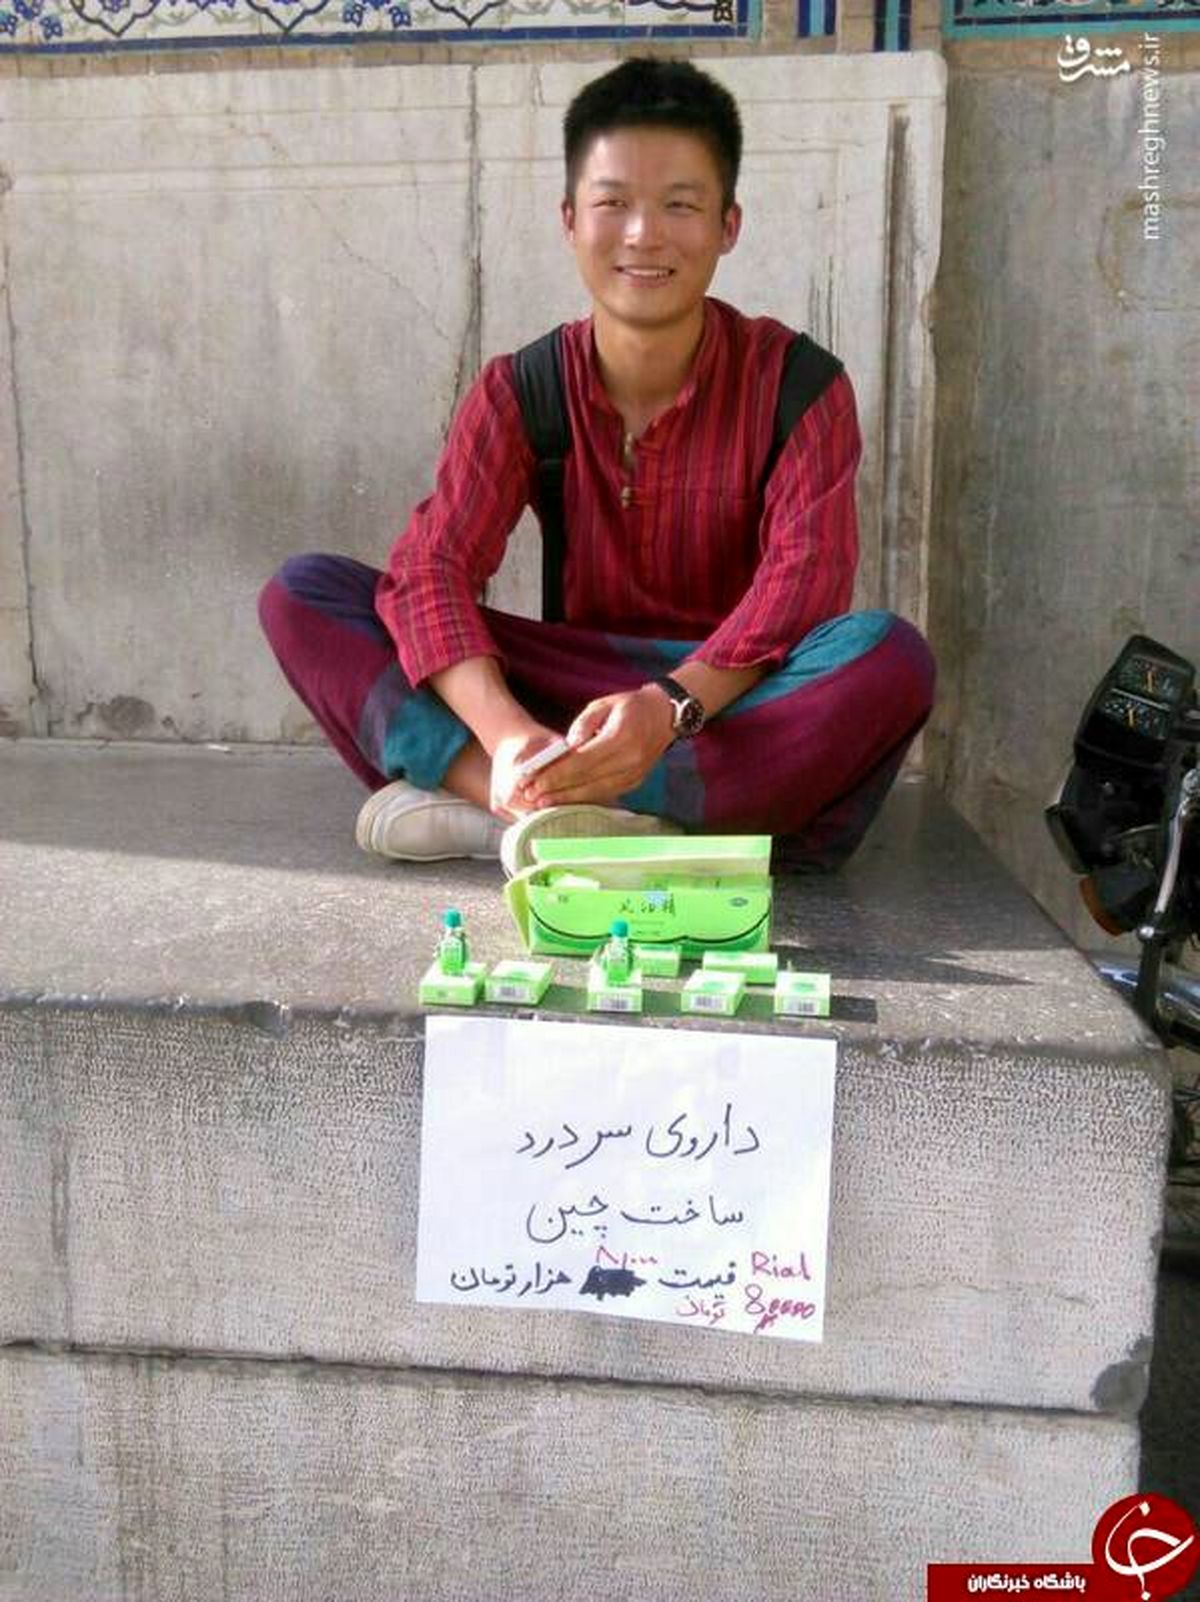 دستفروش چینی در ایران!+عکس